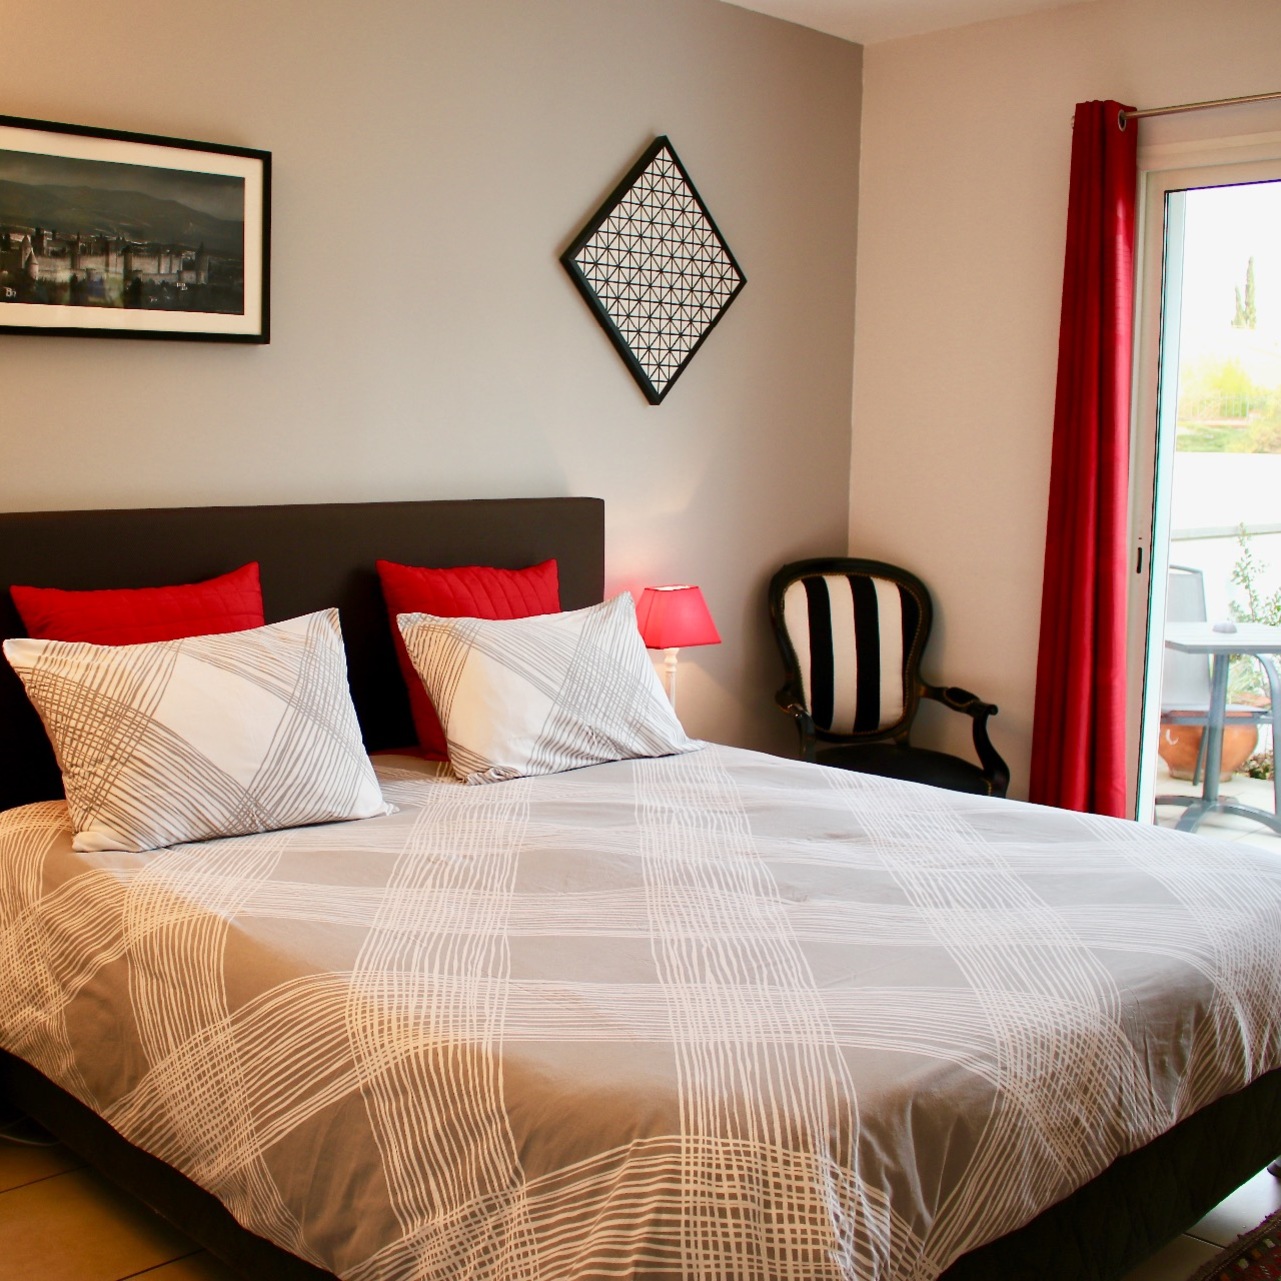 Suite mit King-size Bett 180x200cm und Terrasse